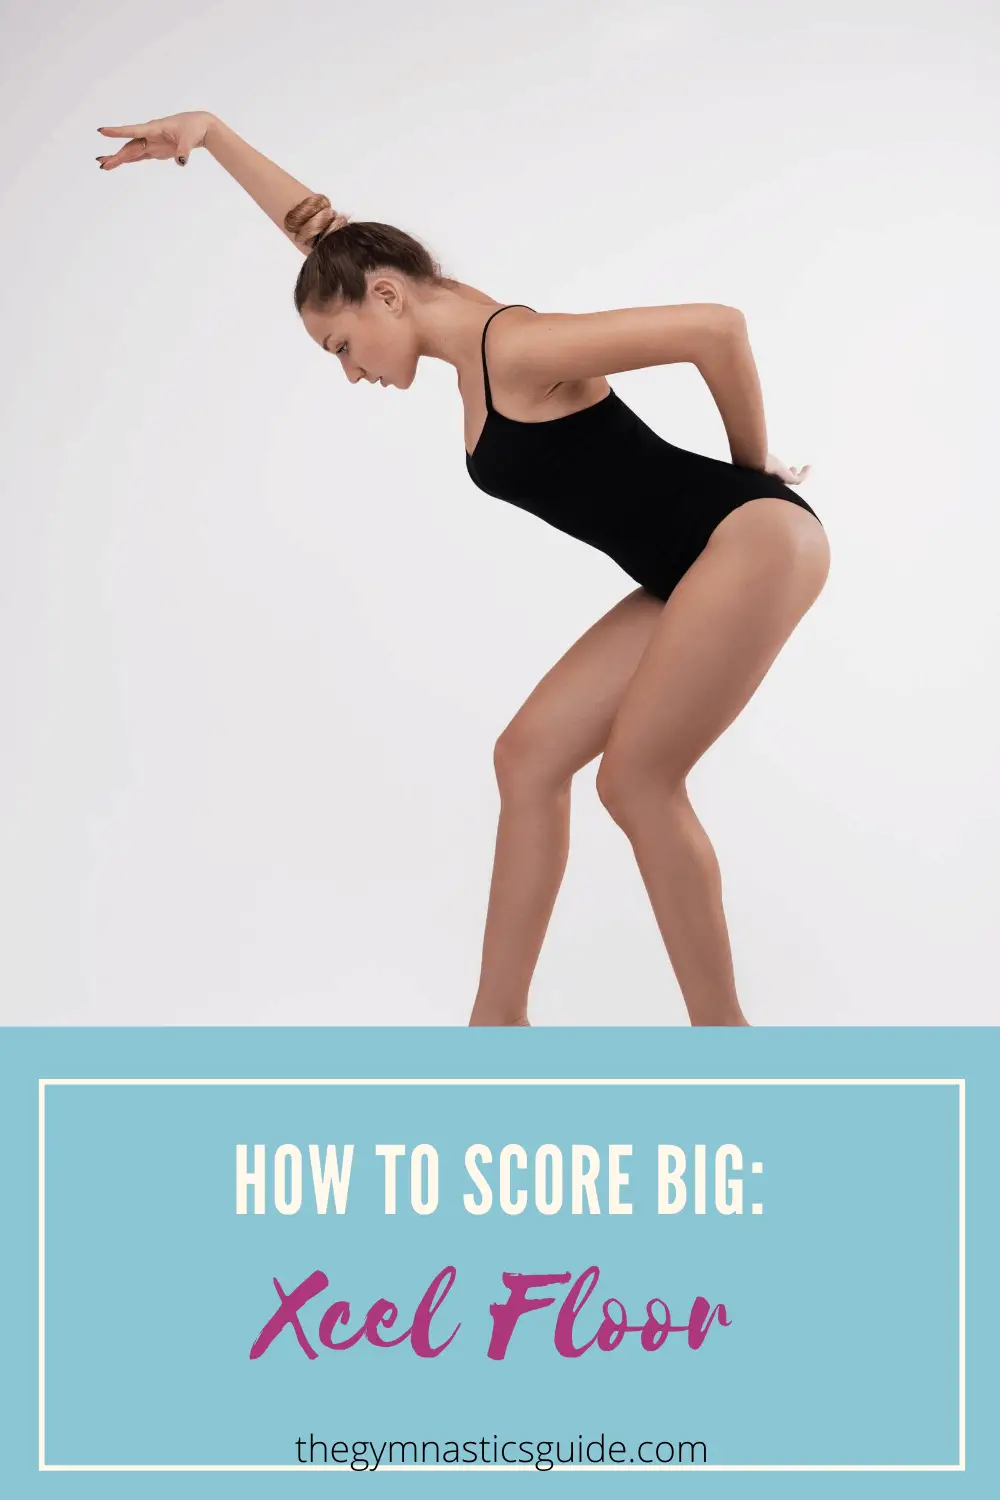 Xcel Floor: How to Score Big